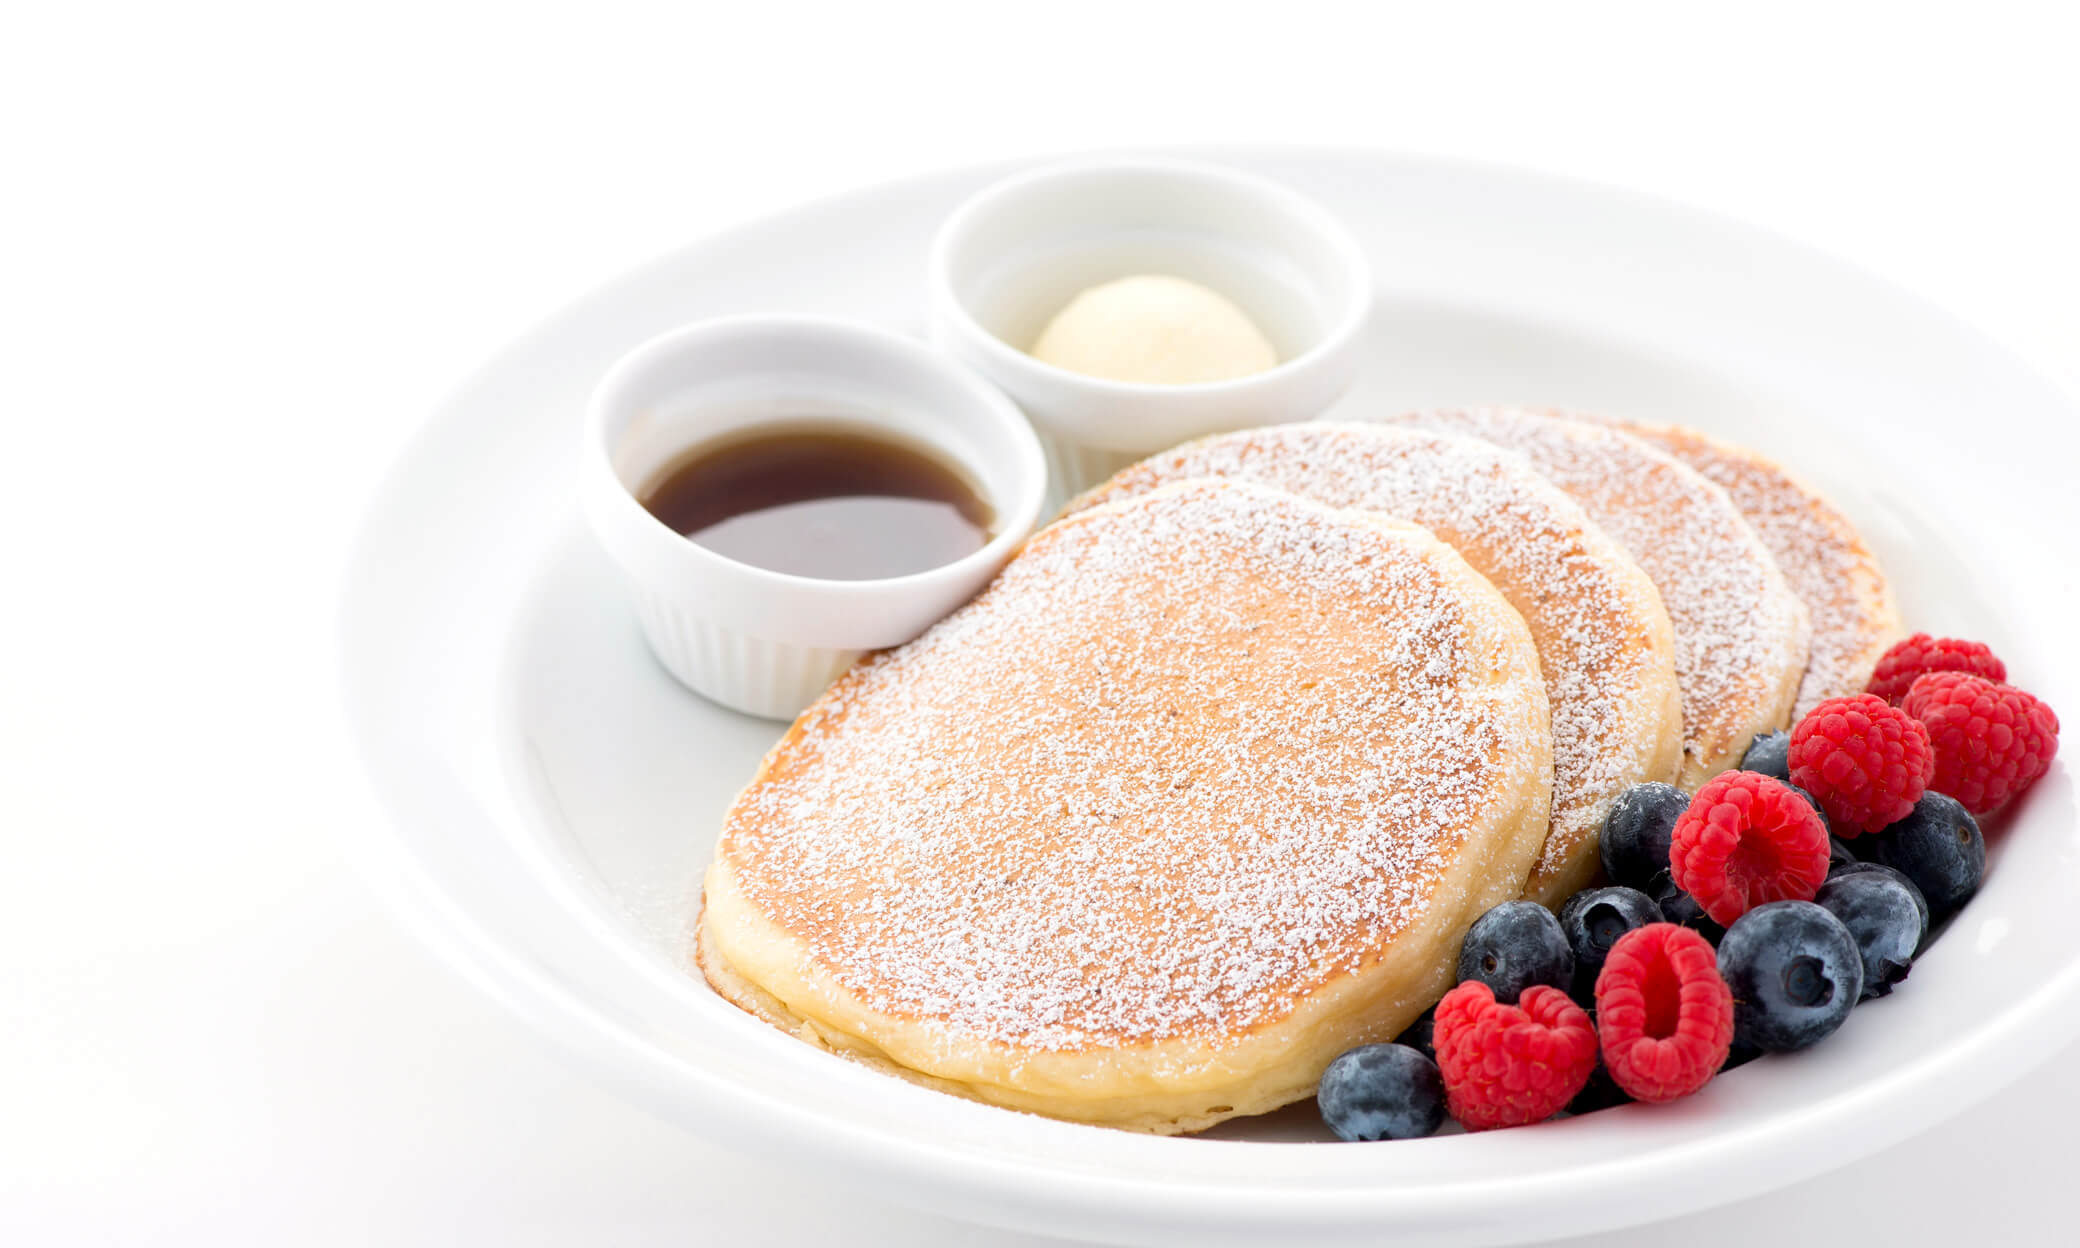 パンケーキ サラベス公式サイト「ニューヨークの朝食の女王」- Sarabeth's Official WEB